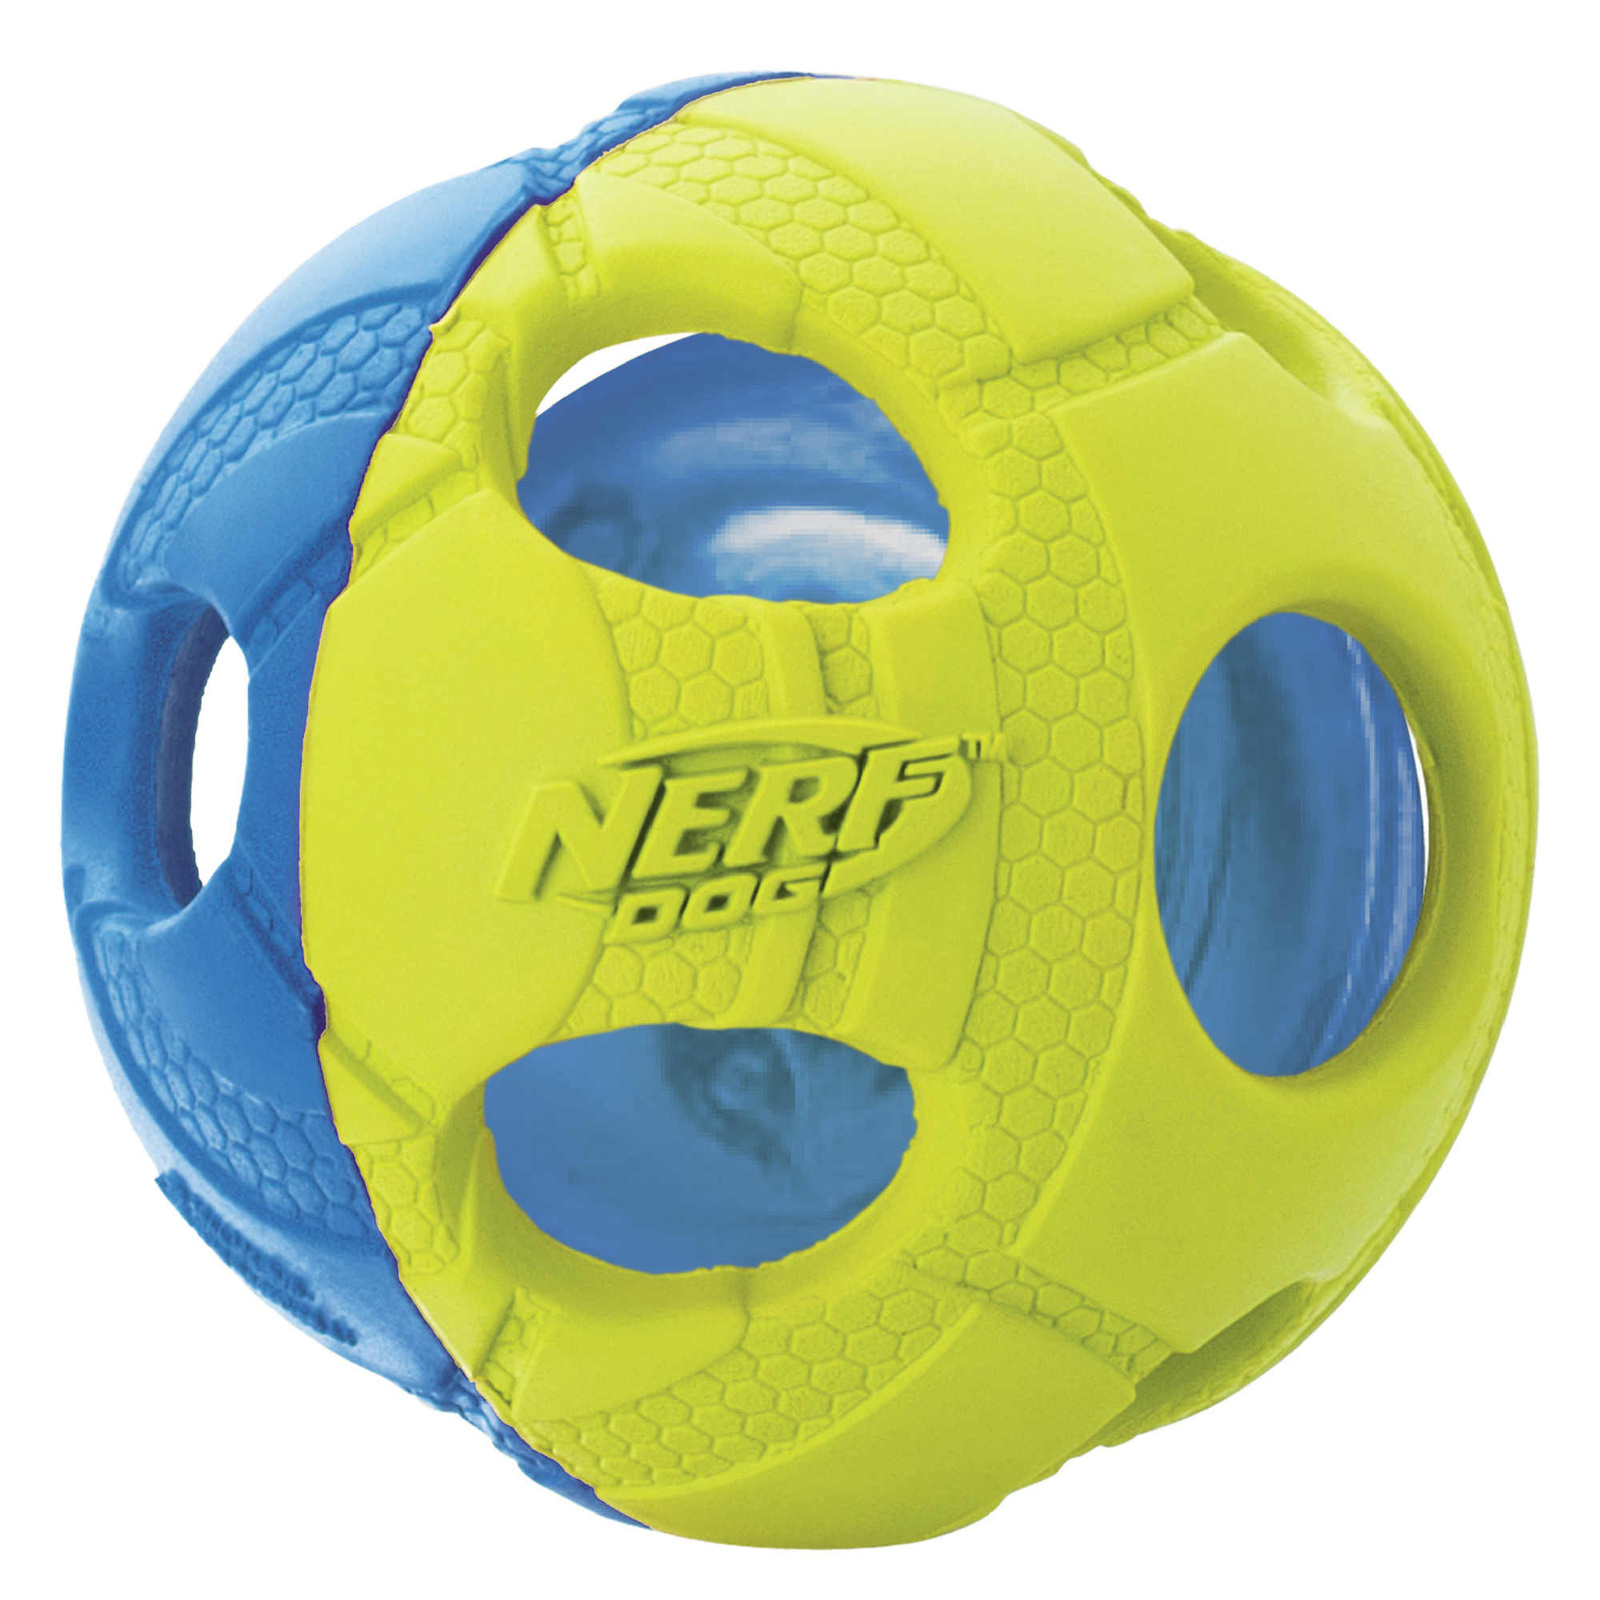 Nerf мяч светящийся, 6 см, (синий/зеленый) (104 г) Nerf мяч светящийся, 6 см, (синий/зеленый) (104 г) - фото 1